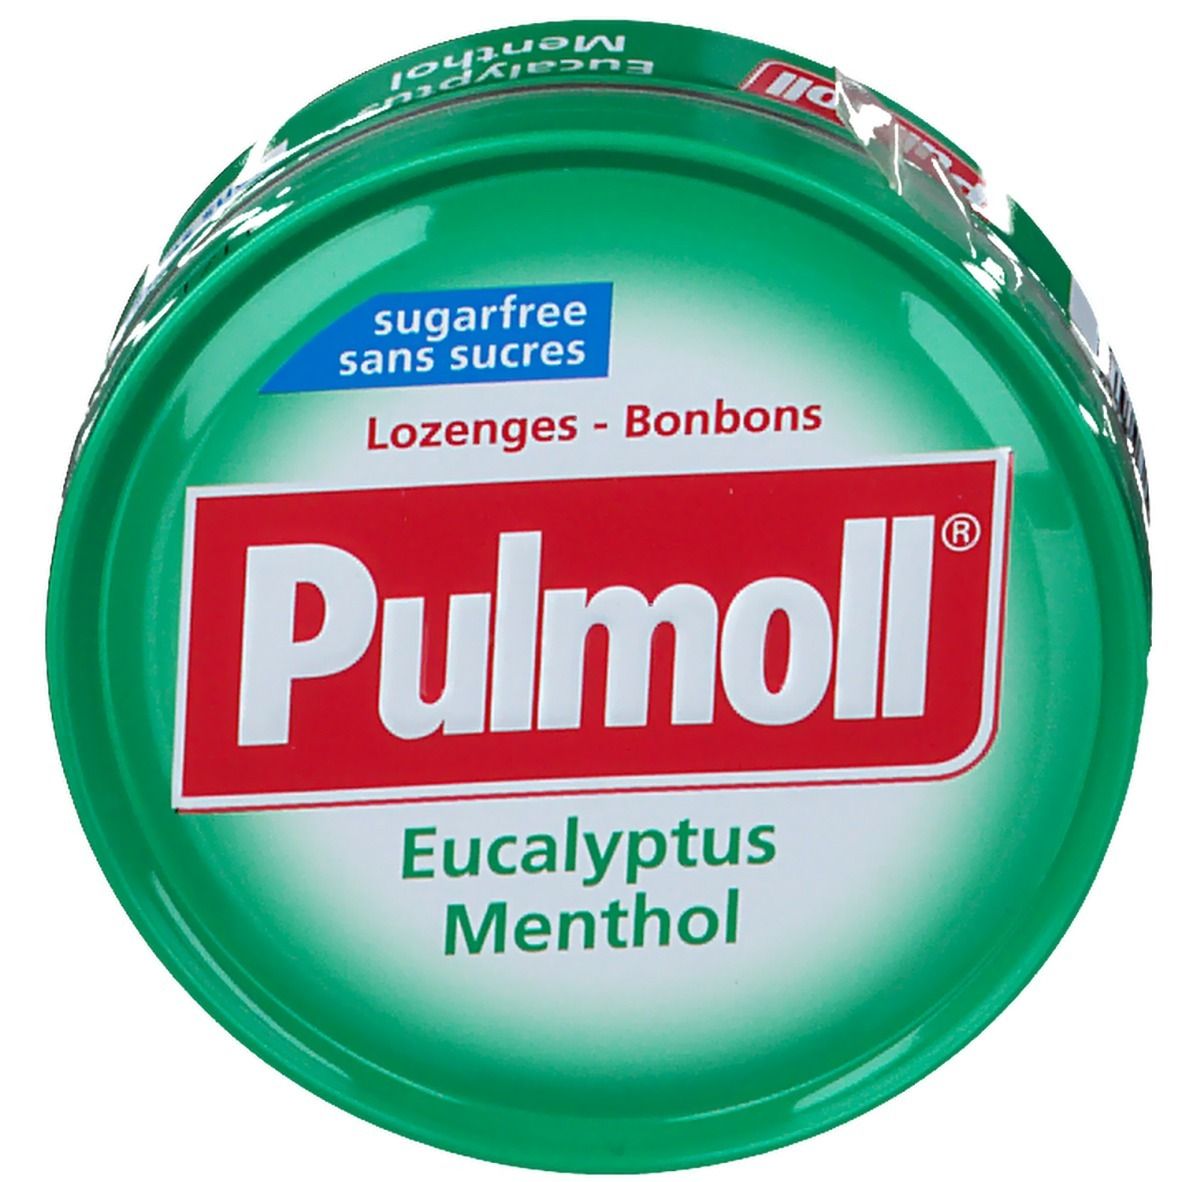 Pumoll pastilles menthol eucalyptus sans sucre